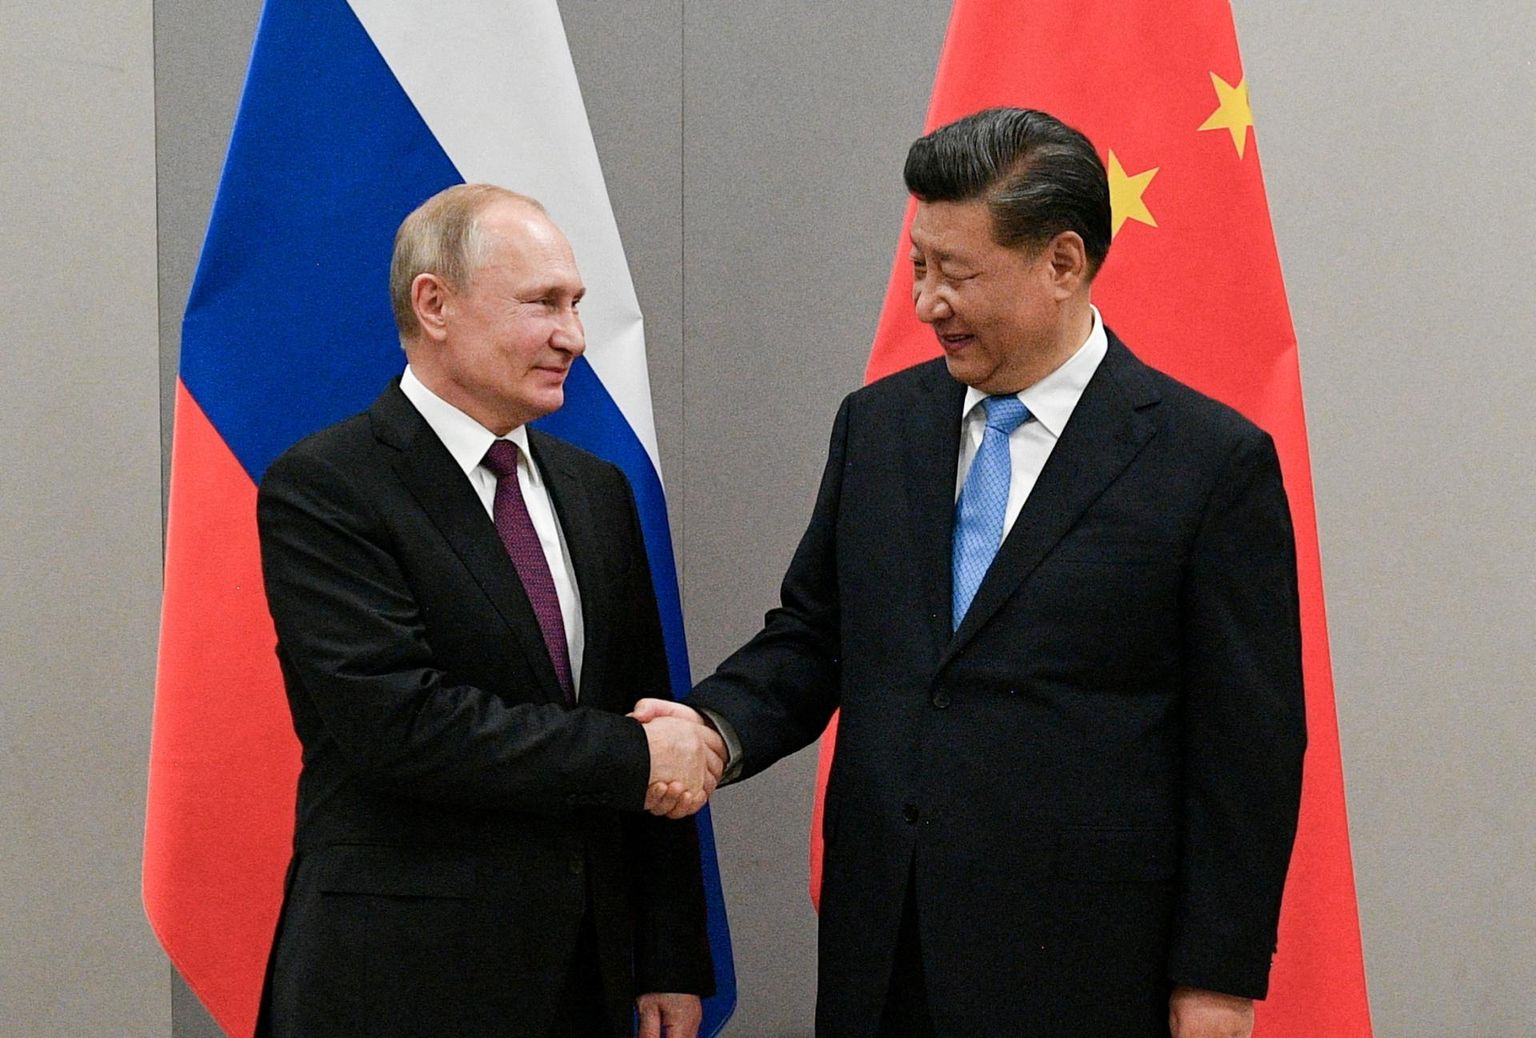 Kinas president Xi Jinping og Russlands president Vladimir Putin. I den russisk-ukrainske krigen, Kina har valgt Russland. på samme måte, Kina kritiserer i økende grad den europeiske sikkerhetsarkitekturen.